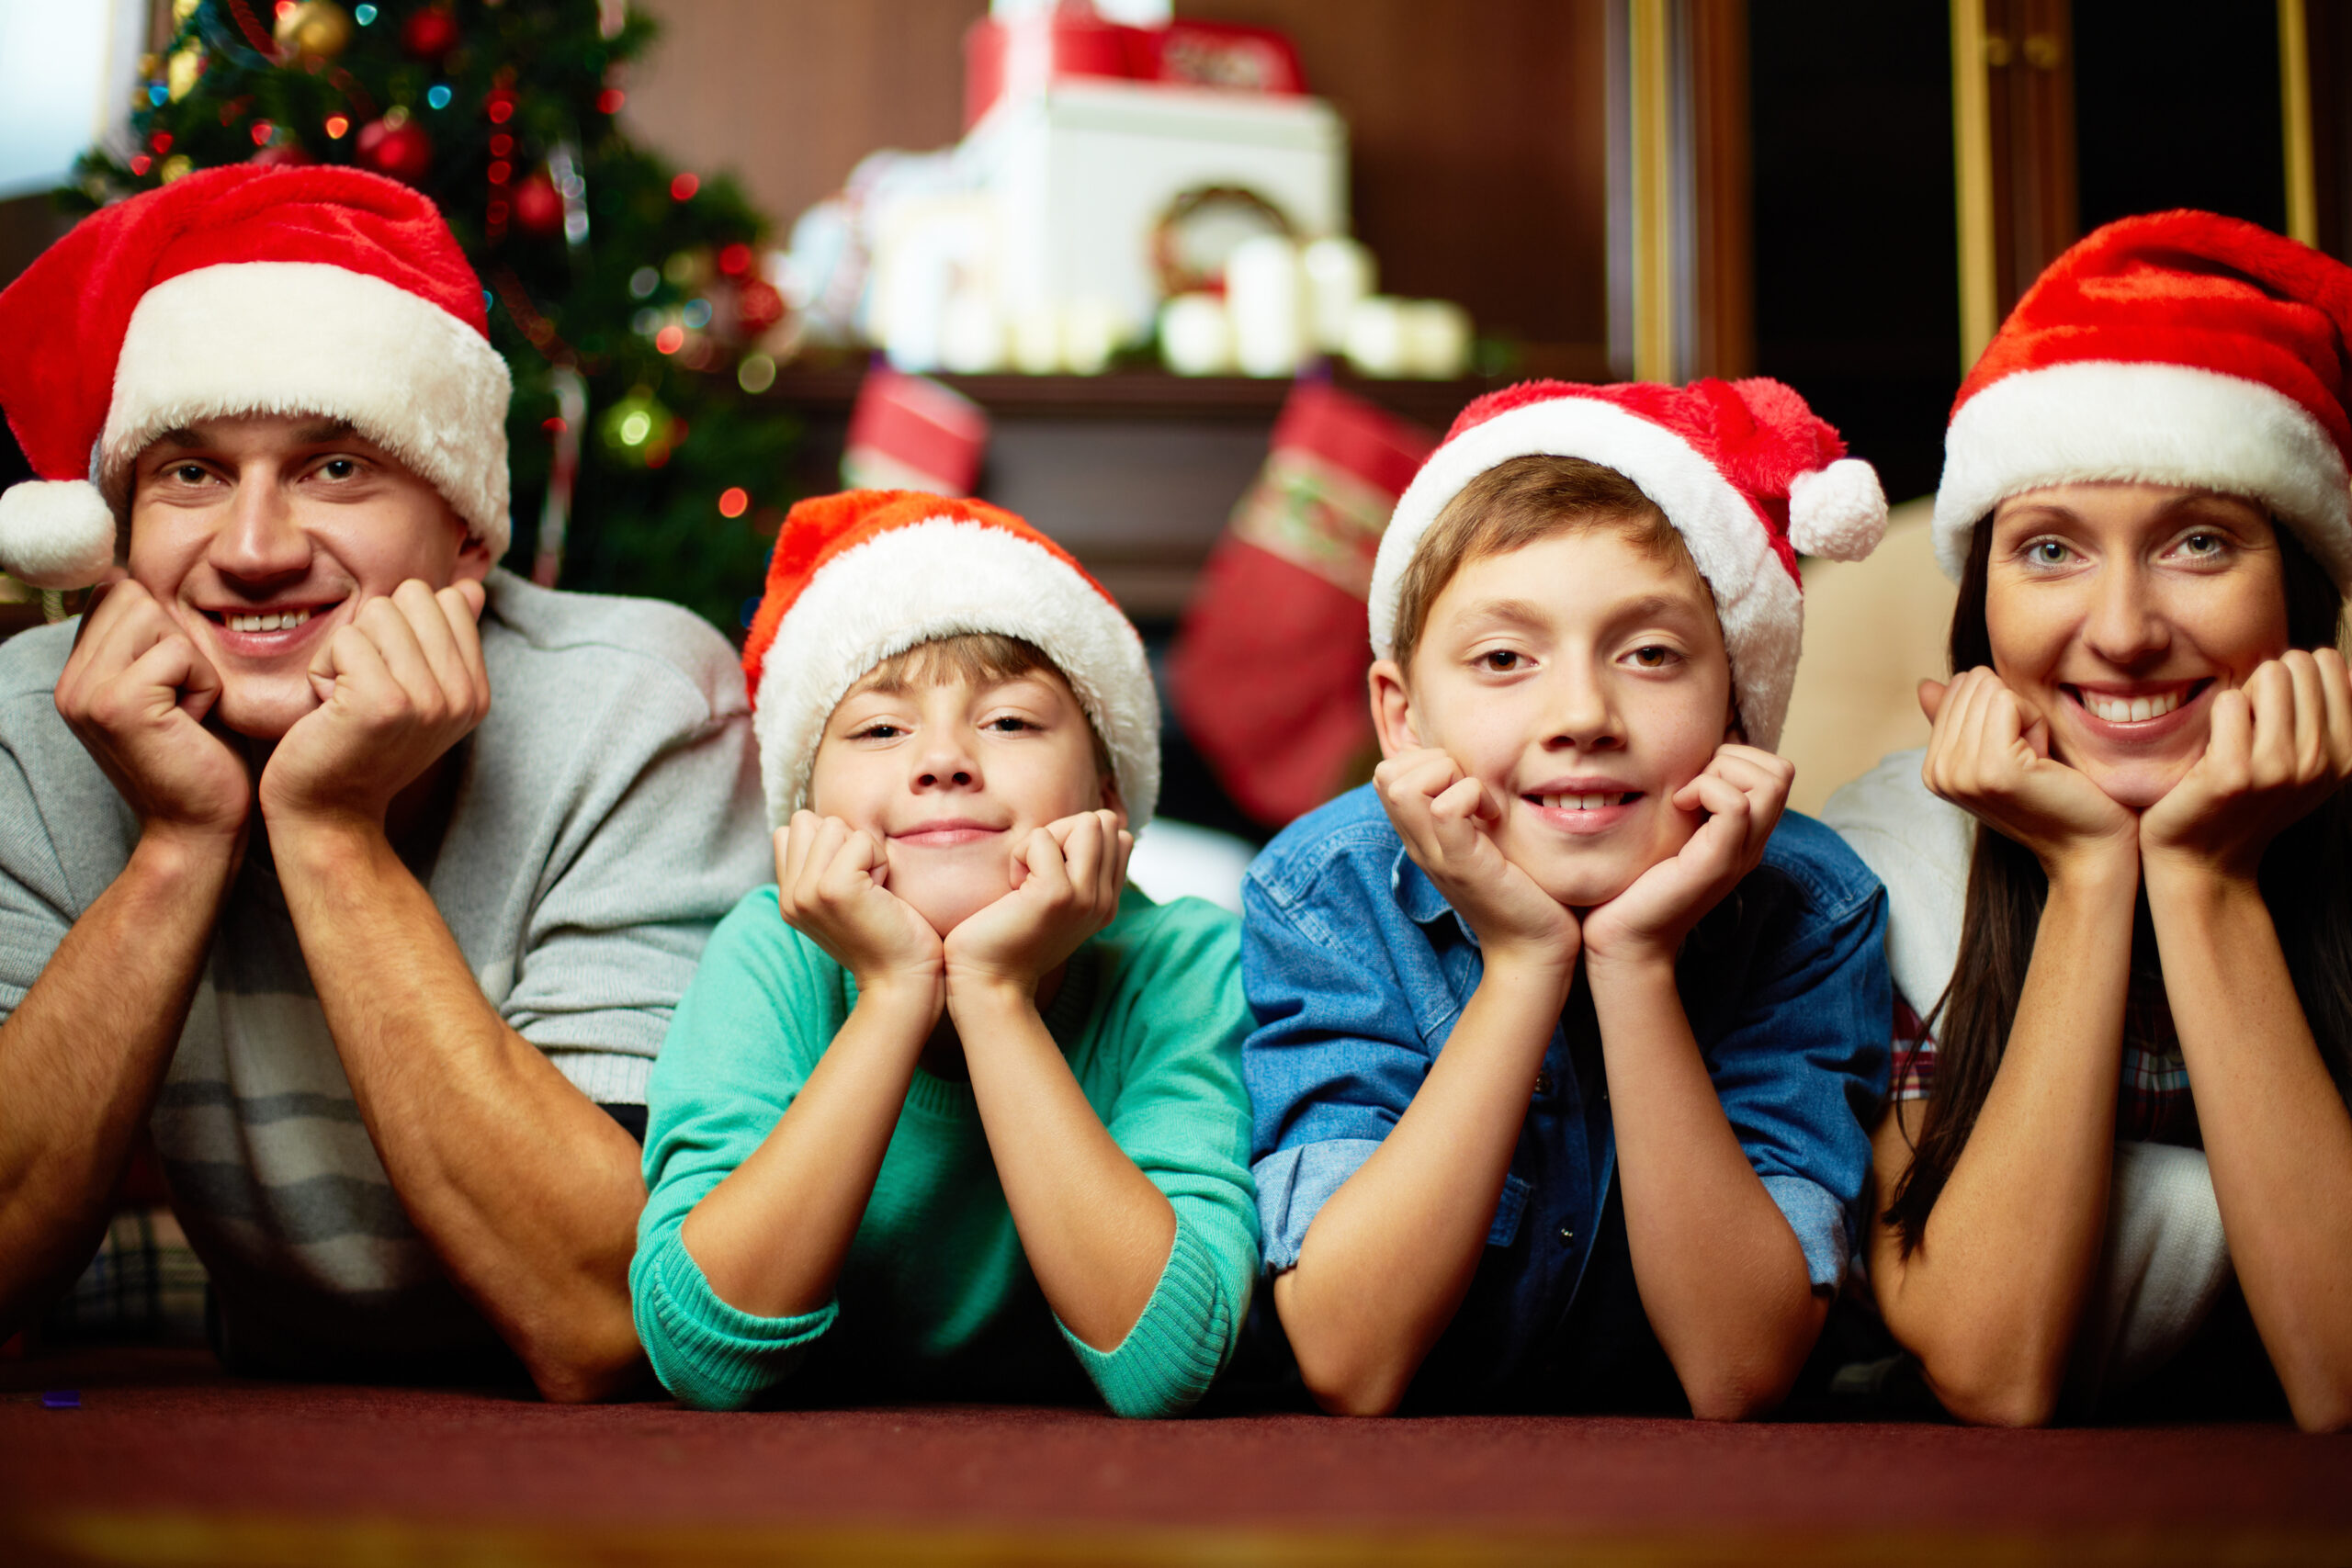 Comment réussir votre photo de famille à Noël ?